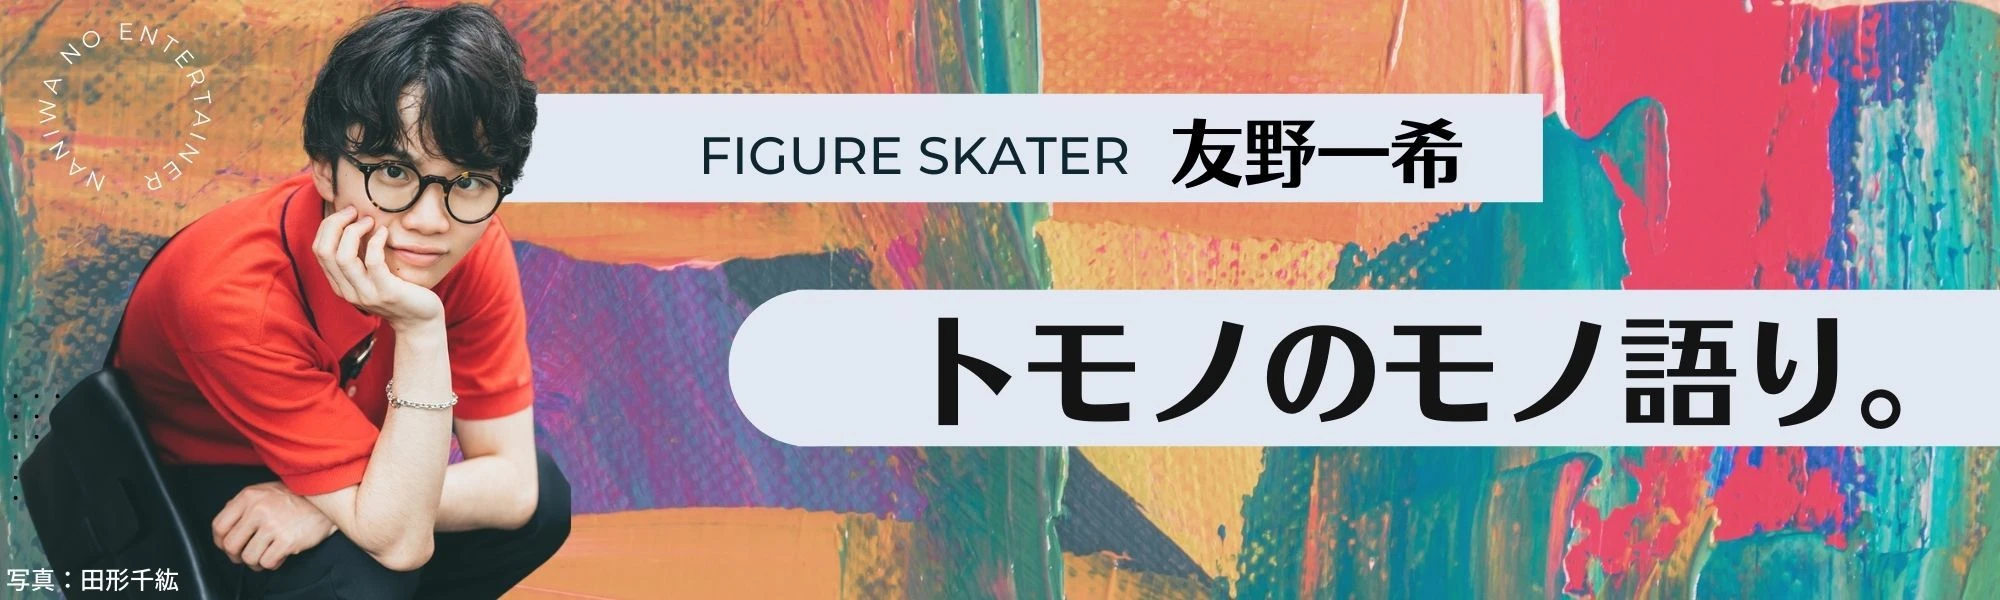 フィギュアスケート友野一希連載「トモノのモノ語り。」